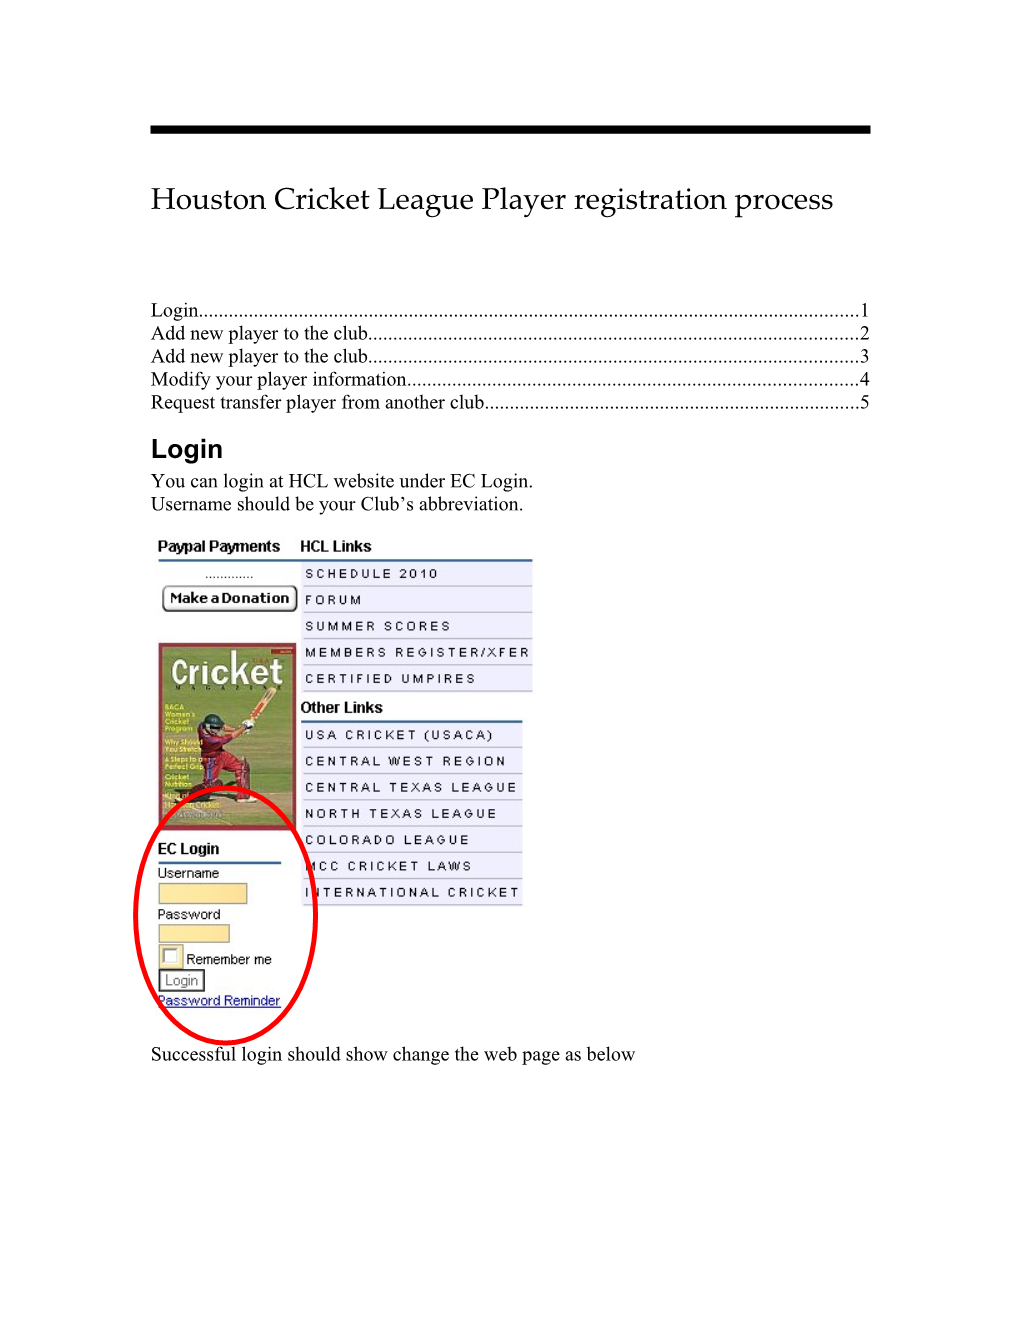 Houston Cricket League Player Registration Process